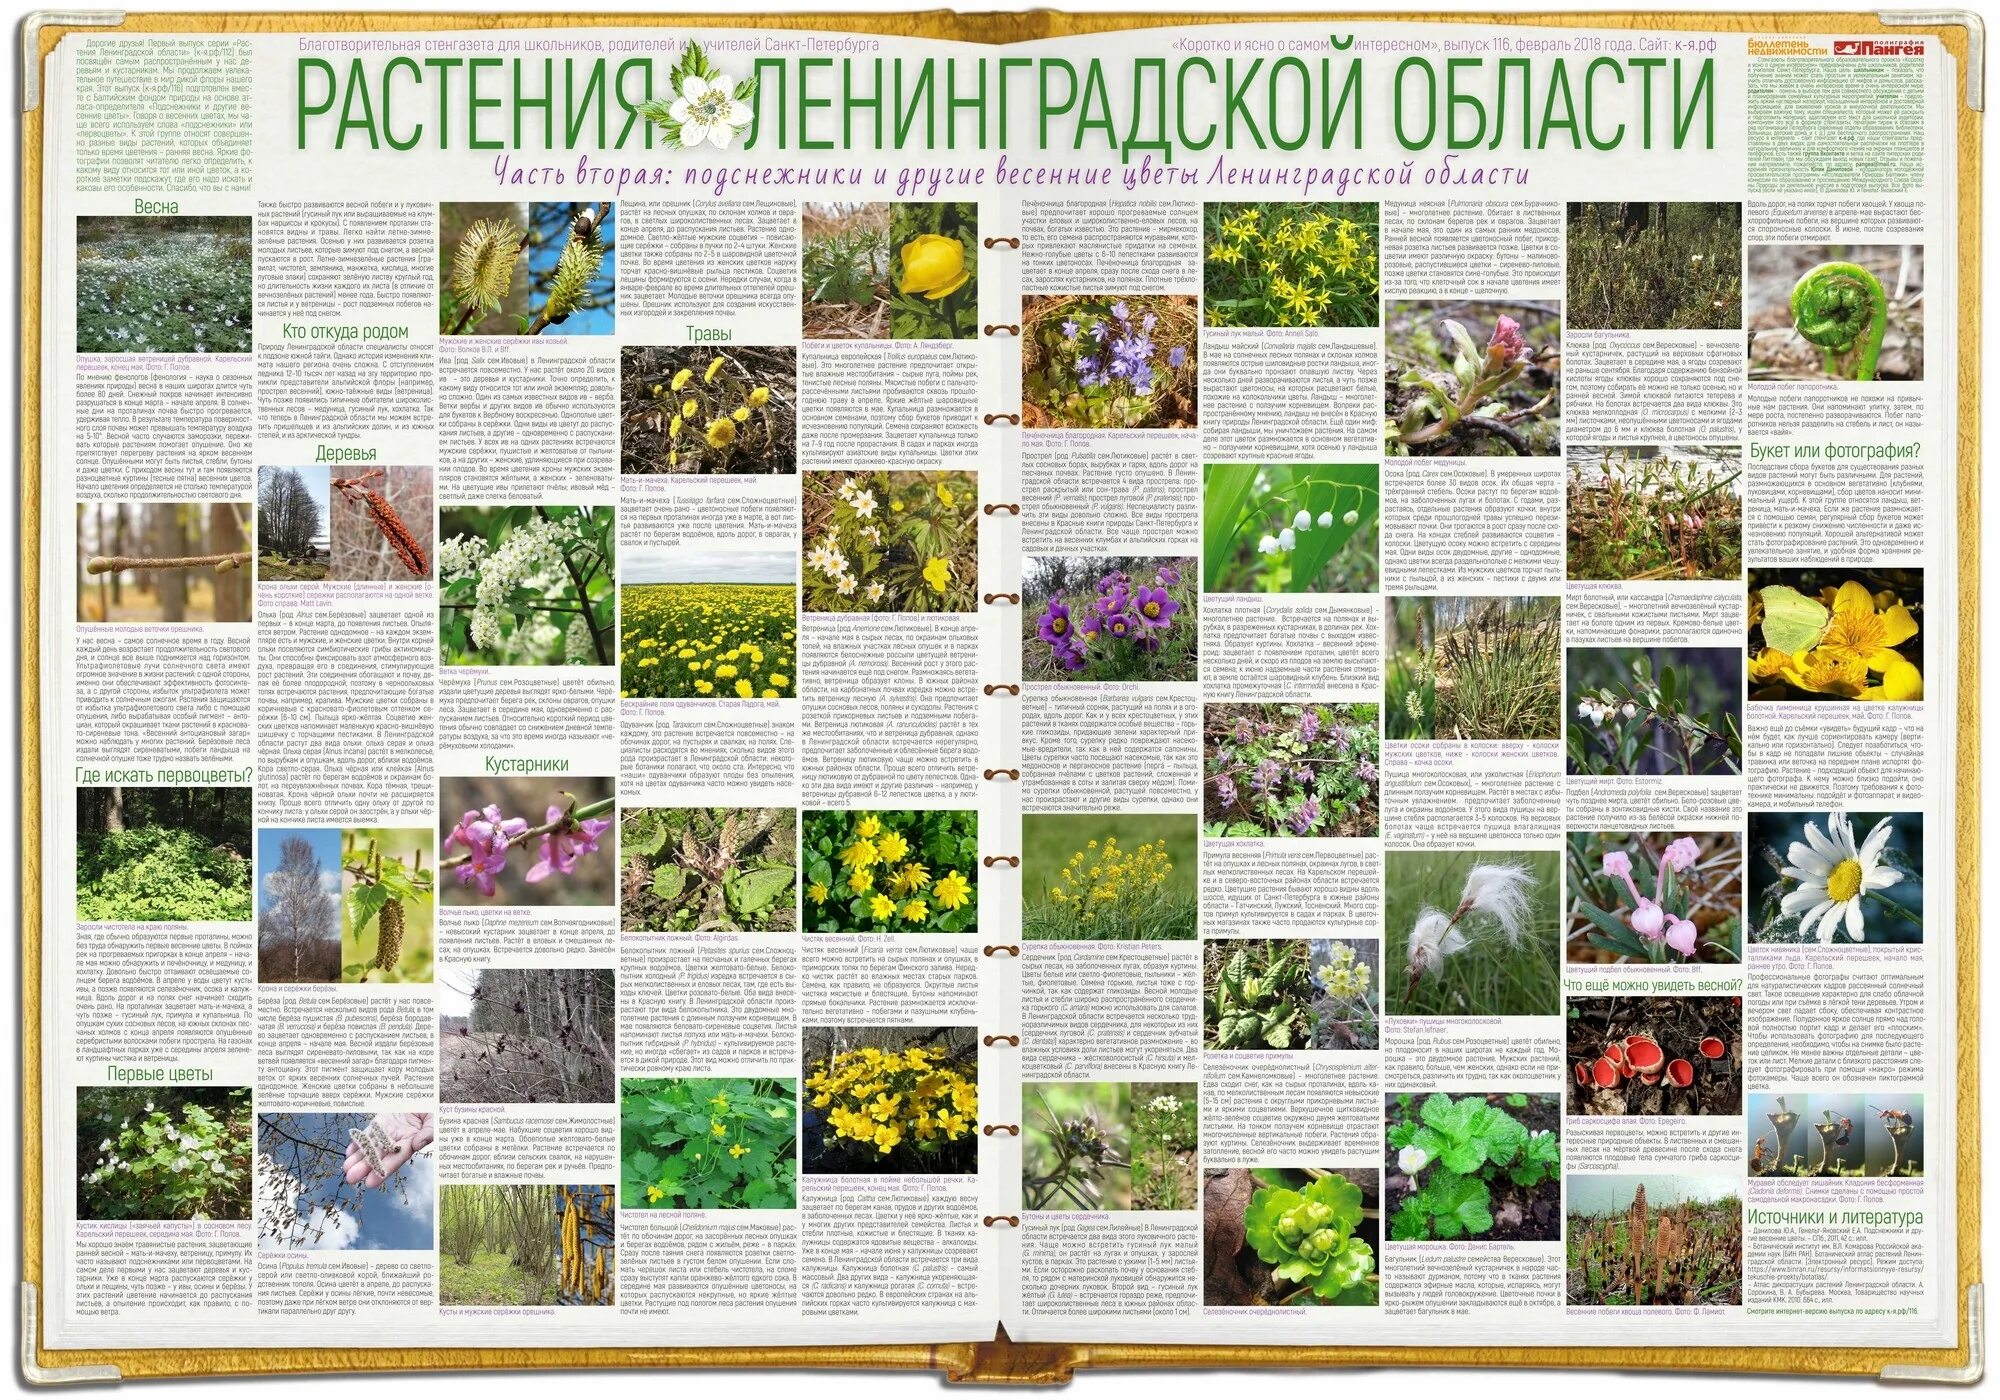 Какие растения в ленинградской области